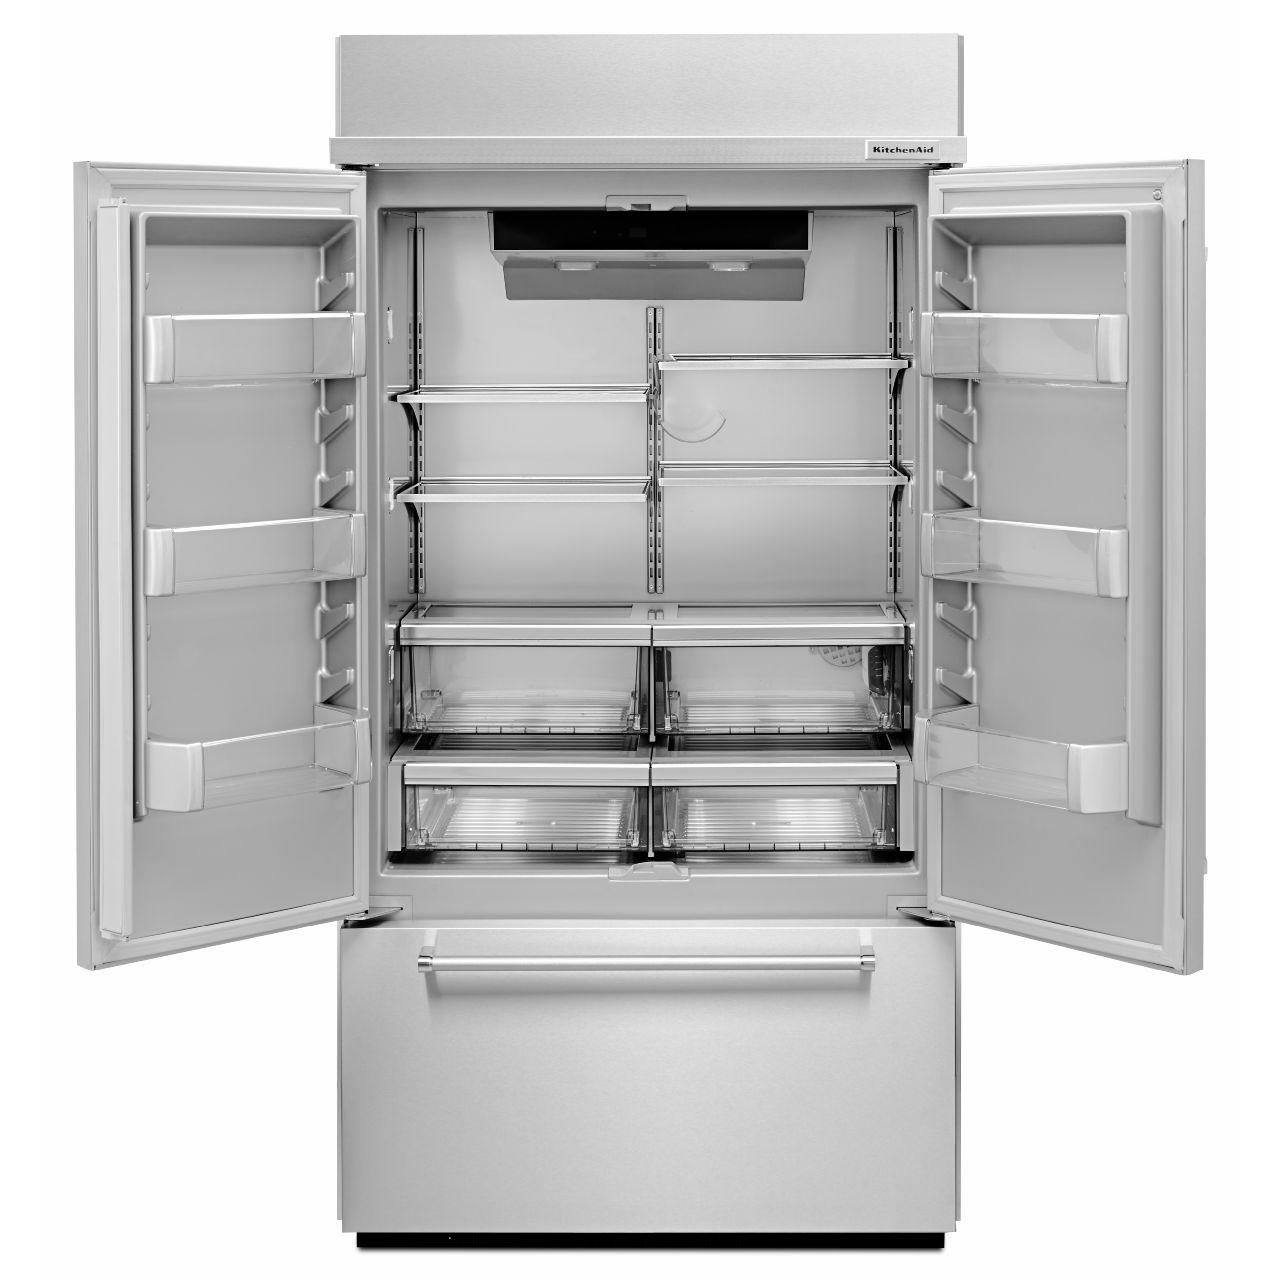 KitchenAid 43-inch, 24.2 cu.ft. Built-in French 3-Door Refrigerator with Platinum Interior Design KBFN502ESS